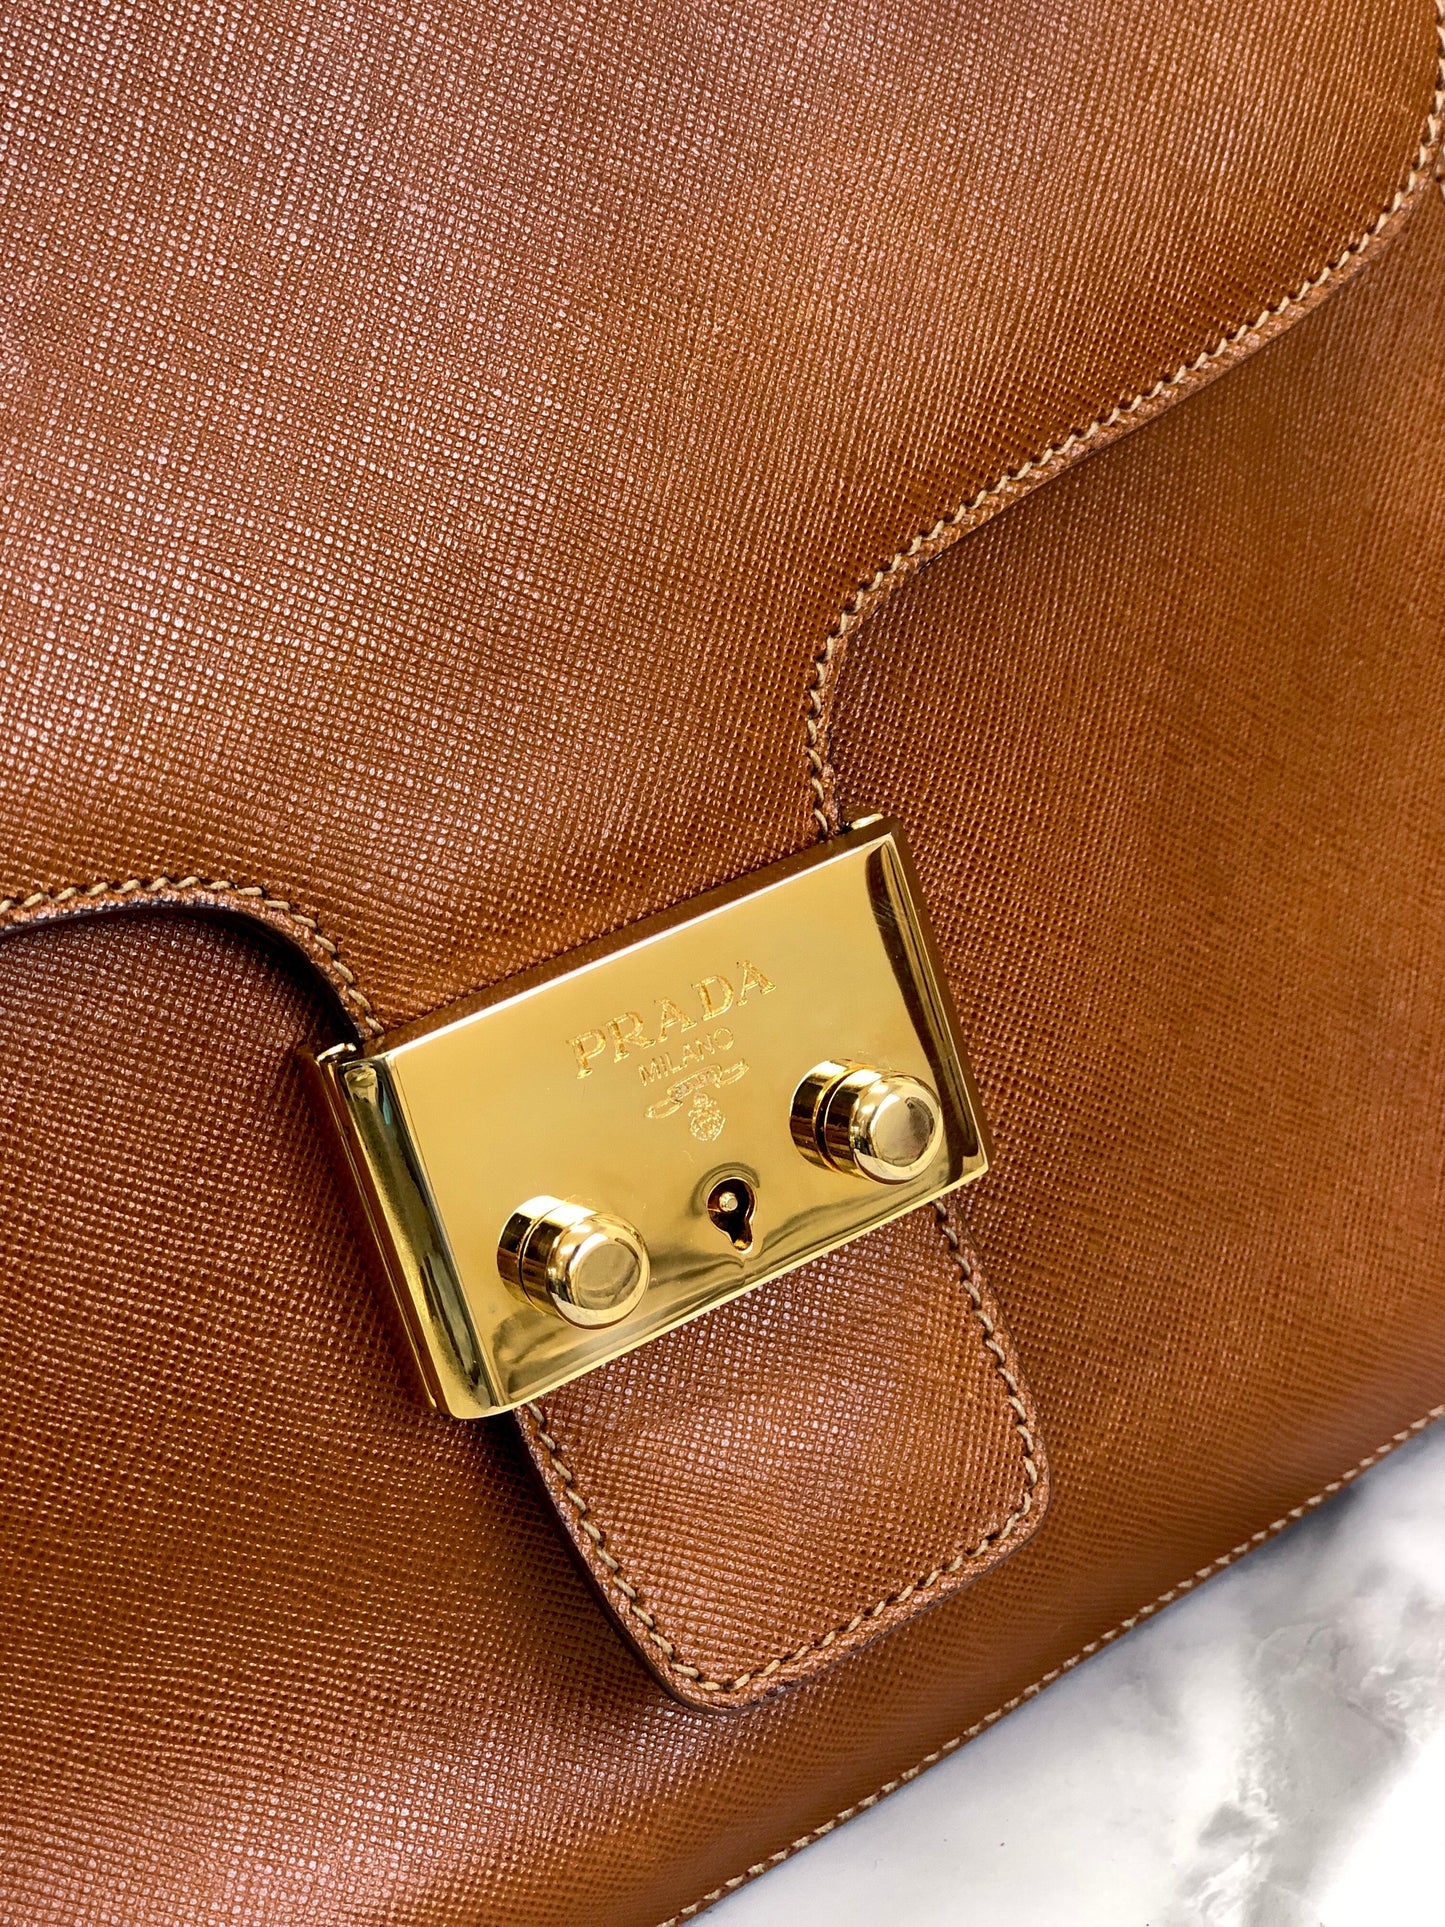 PRADA Metal Closure Top Handle Saffiano Leather Handbag Brown Vintage Old 2iytdz